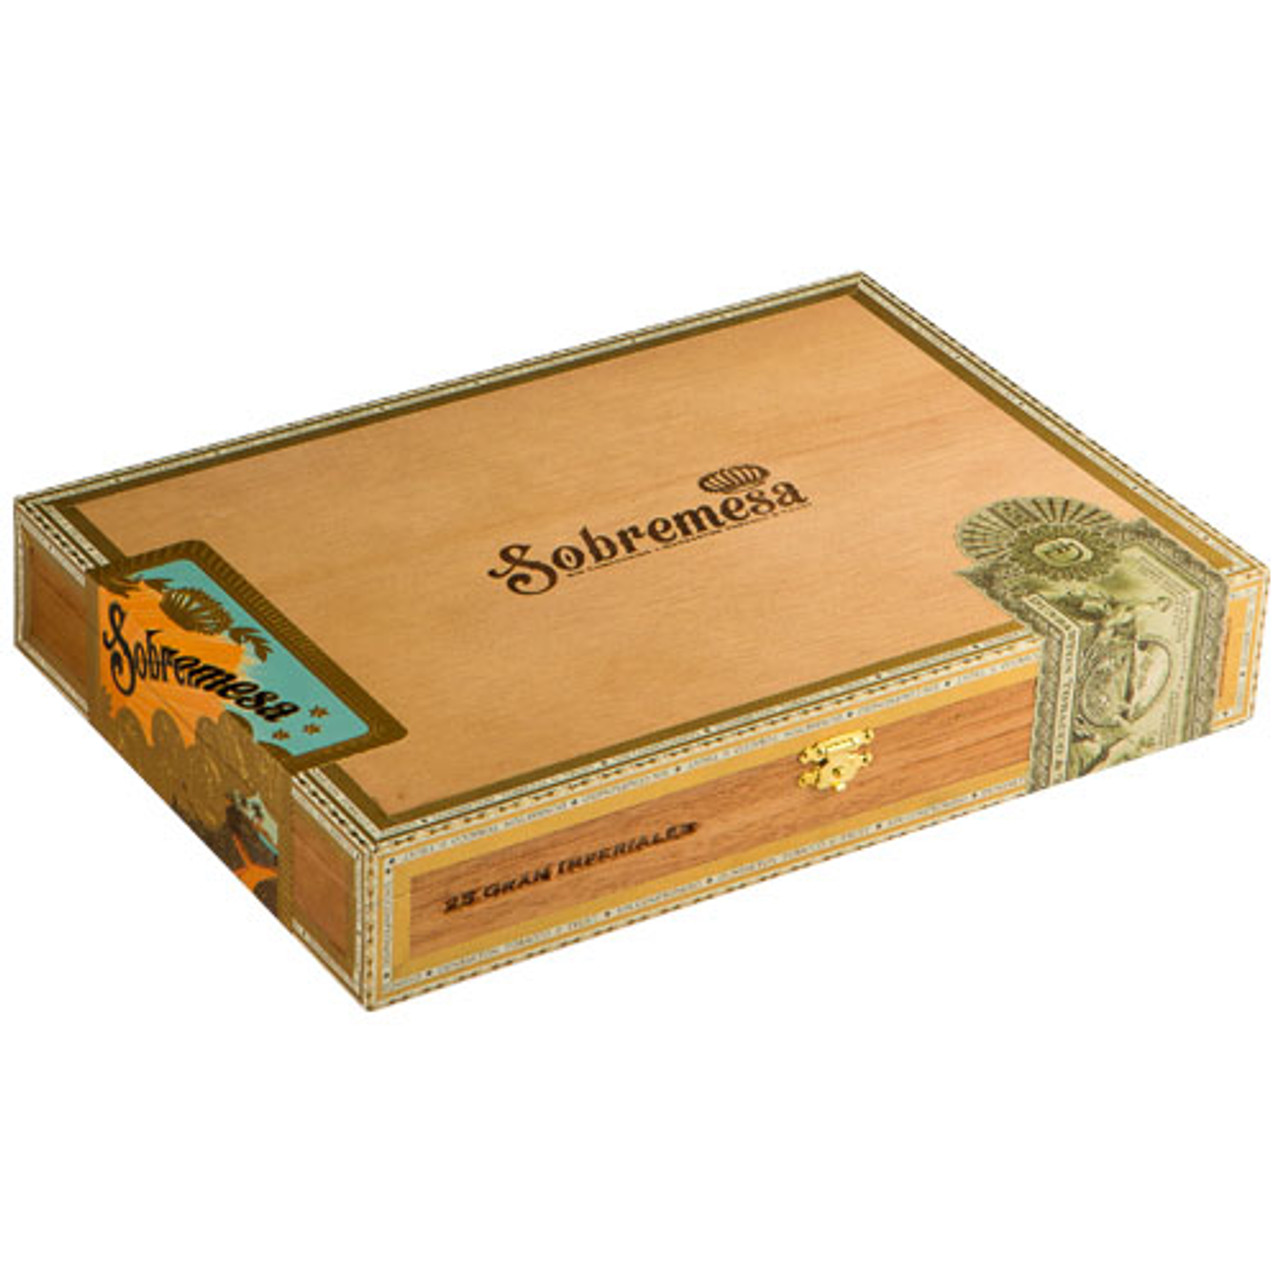 Sobremesa Gran Imperiales Cigars - 7 x 54 (Box of 25)